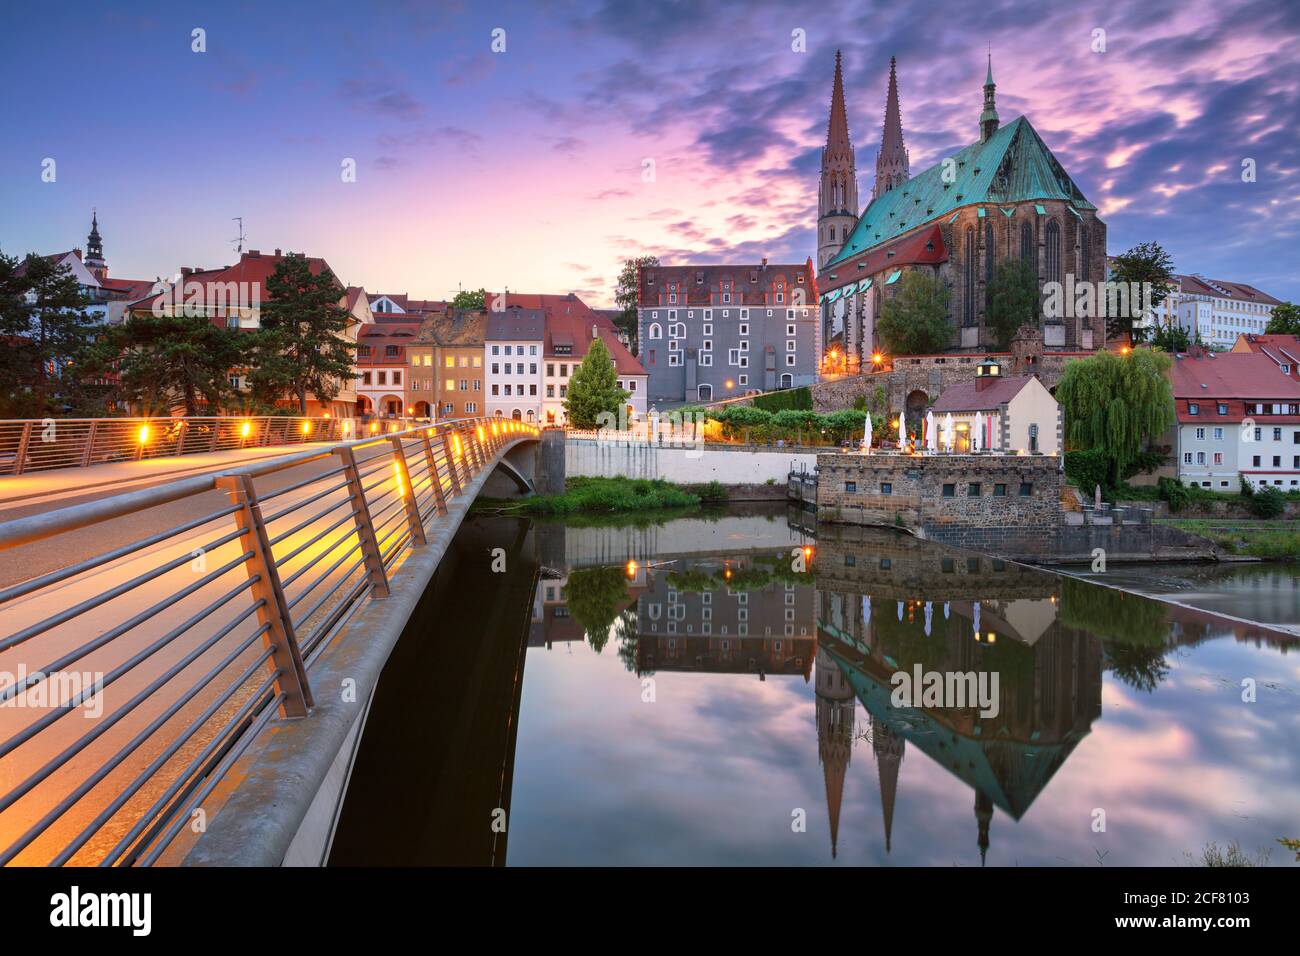 Gorlitz, Deutschland. Stadtbild der historischen Innenstadt von Gorlitz, Deutschland bei dramatischem Sonnenuntergang. Stockfoto